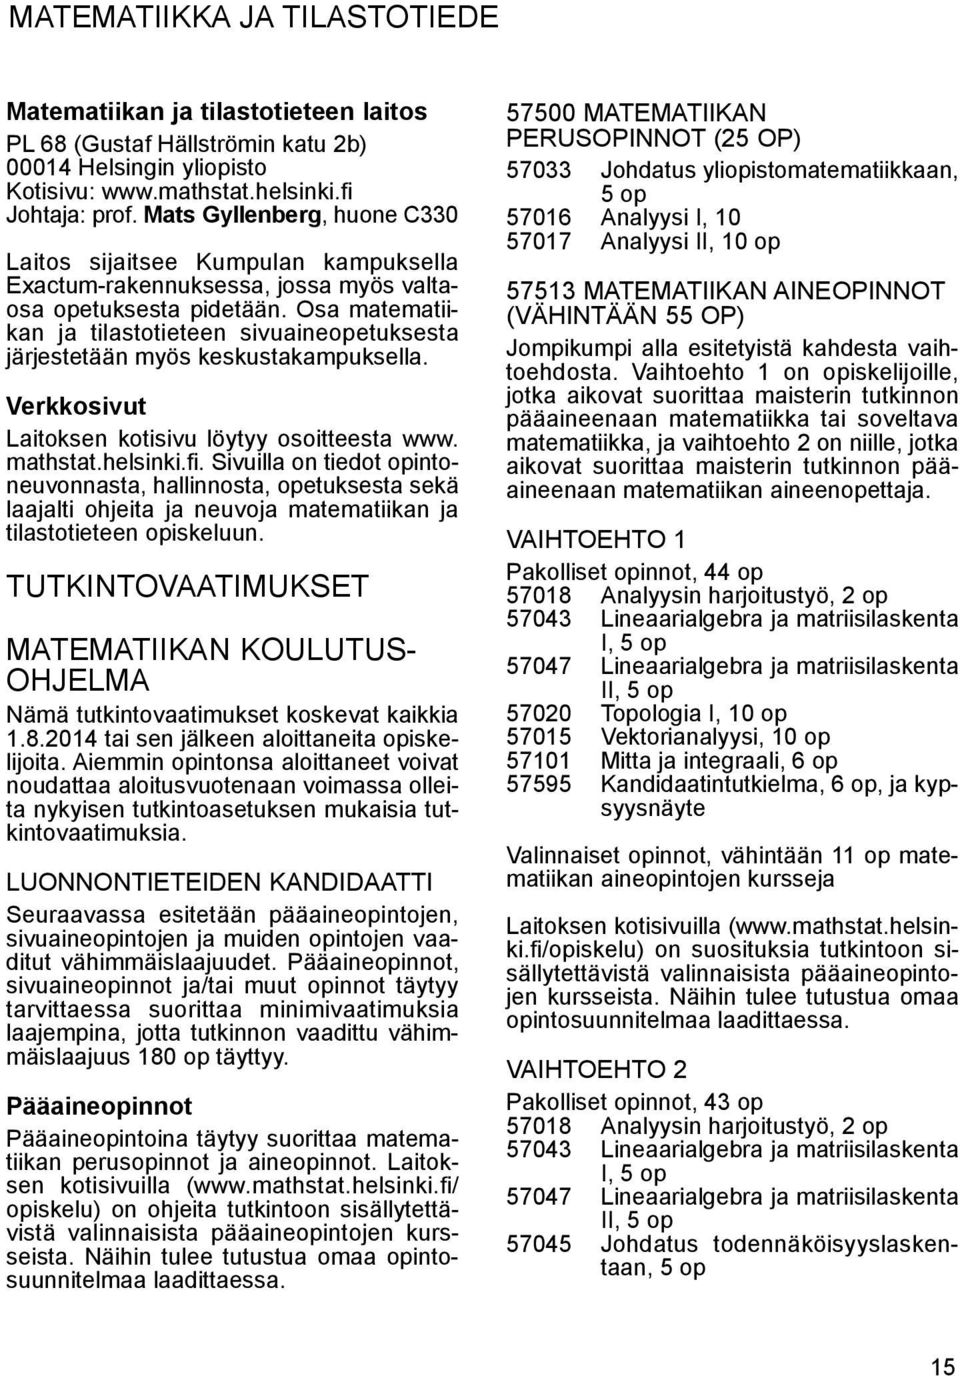 Osa matematiikan ja tilastotieteen sivuaine opetuksesta järjestetään myös keskustakampuksella. Verkkosivut Laitoksen kotisivu löytyy osoitteesta www. mathstat.helsinki.fi.